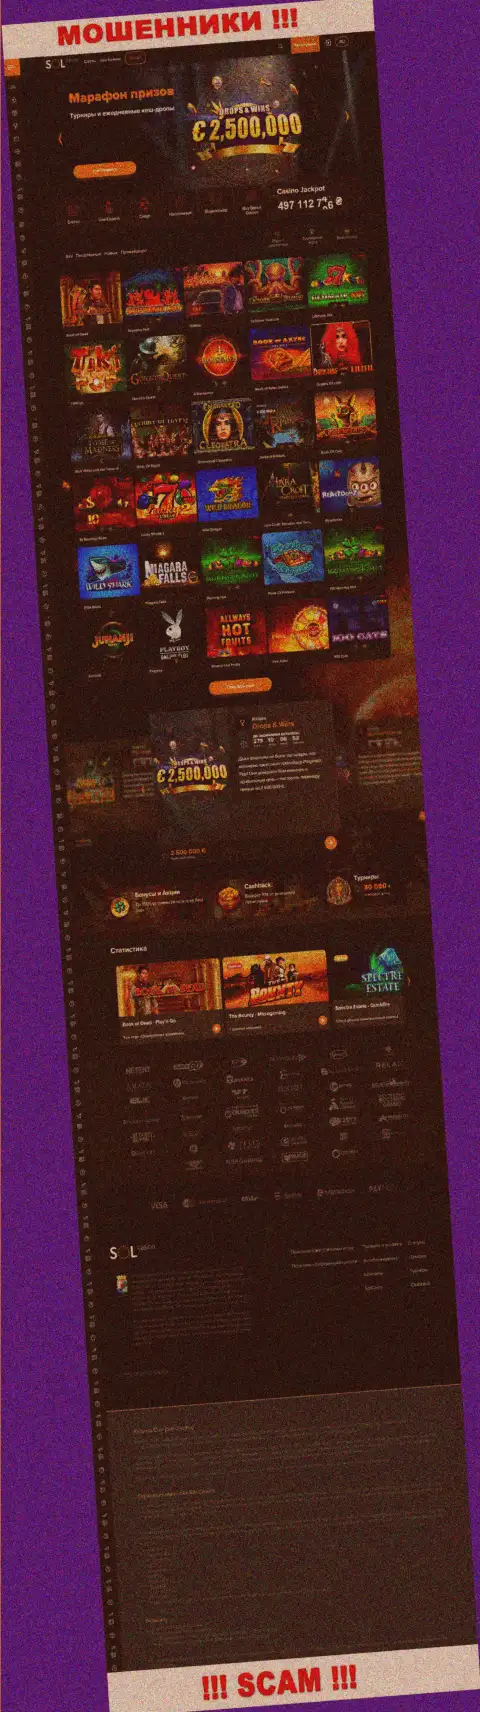 Основная страница официального web-сервиса мошенников Sol Casino